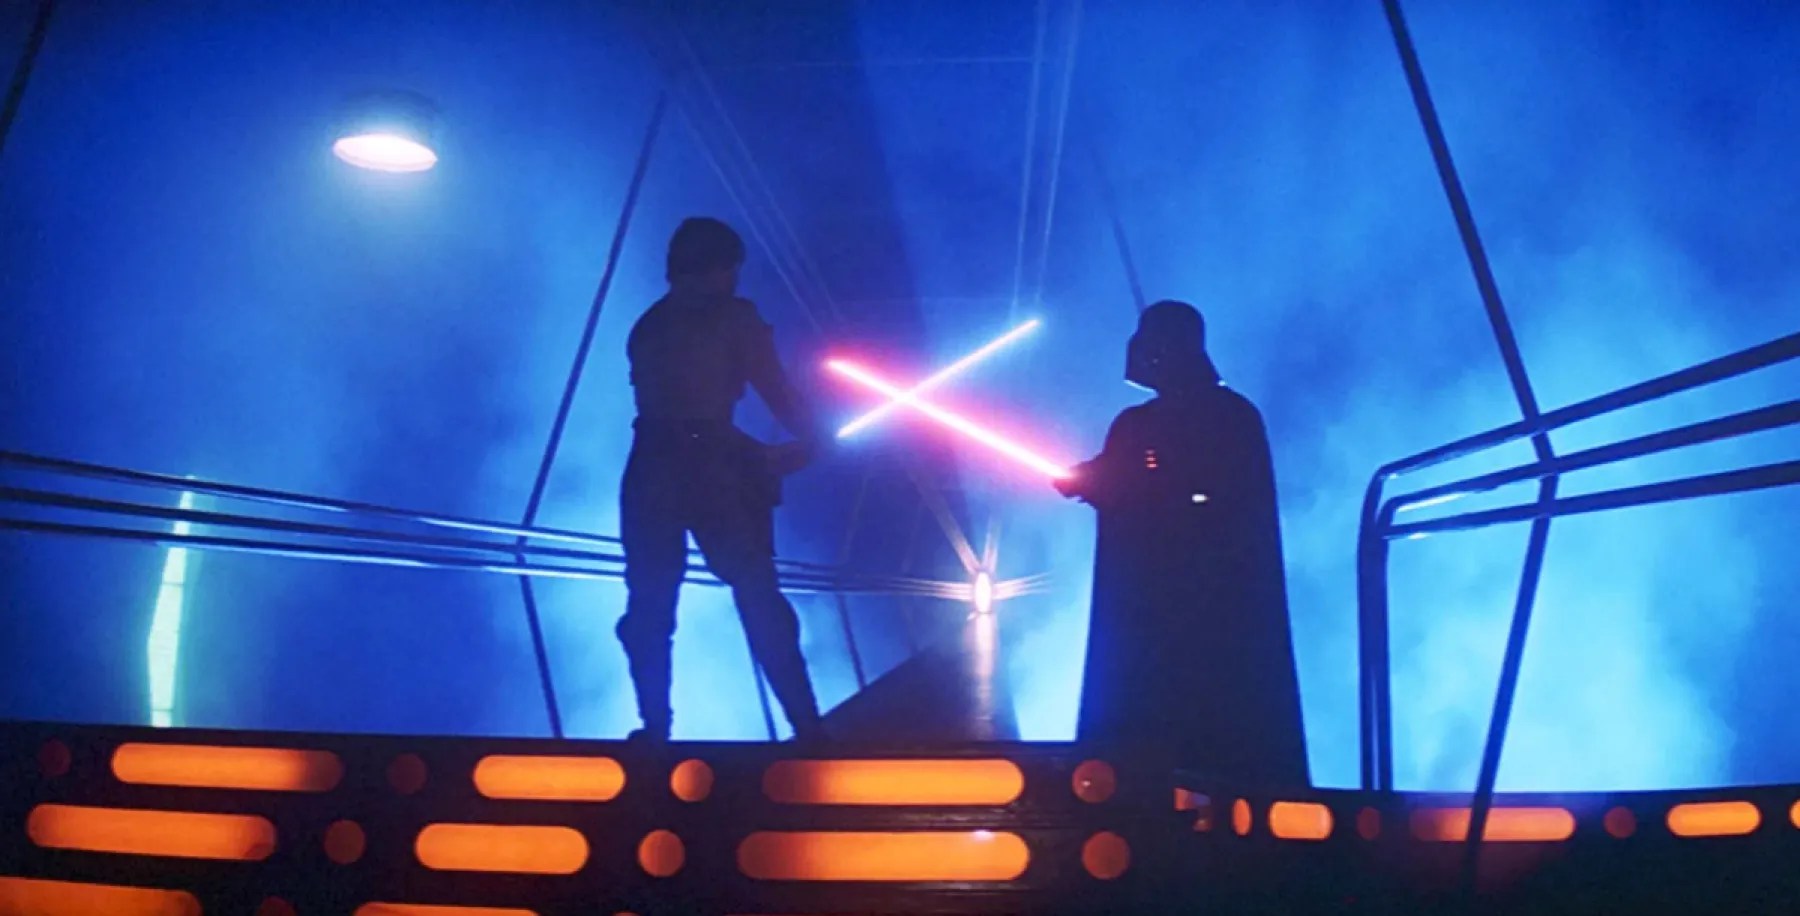 Luke and Vader lightsaber duel! 